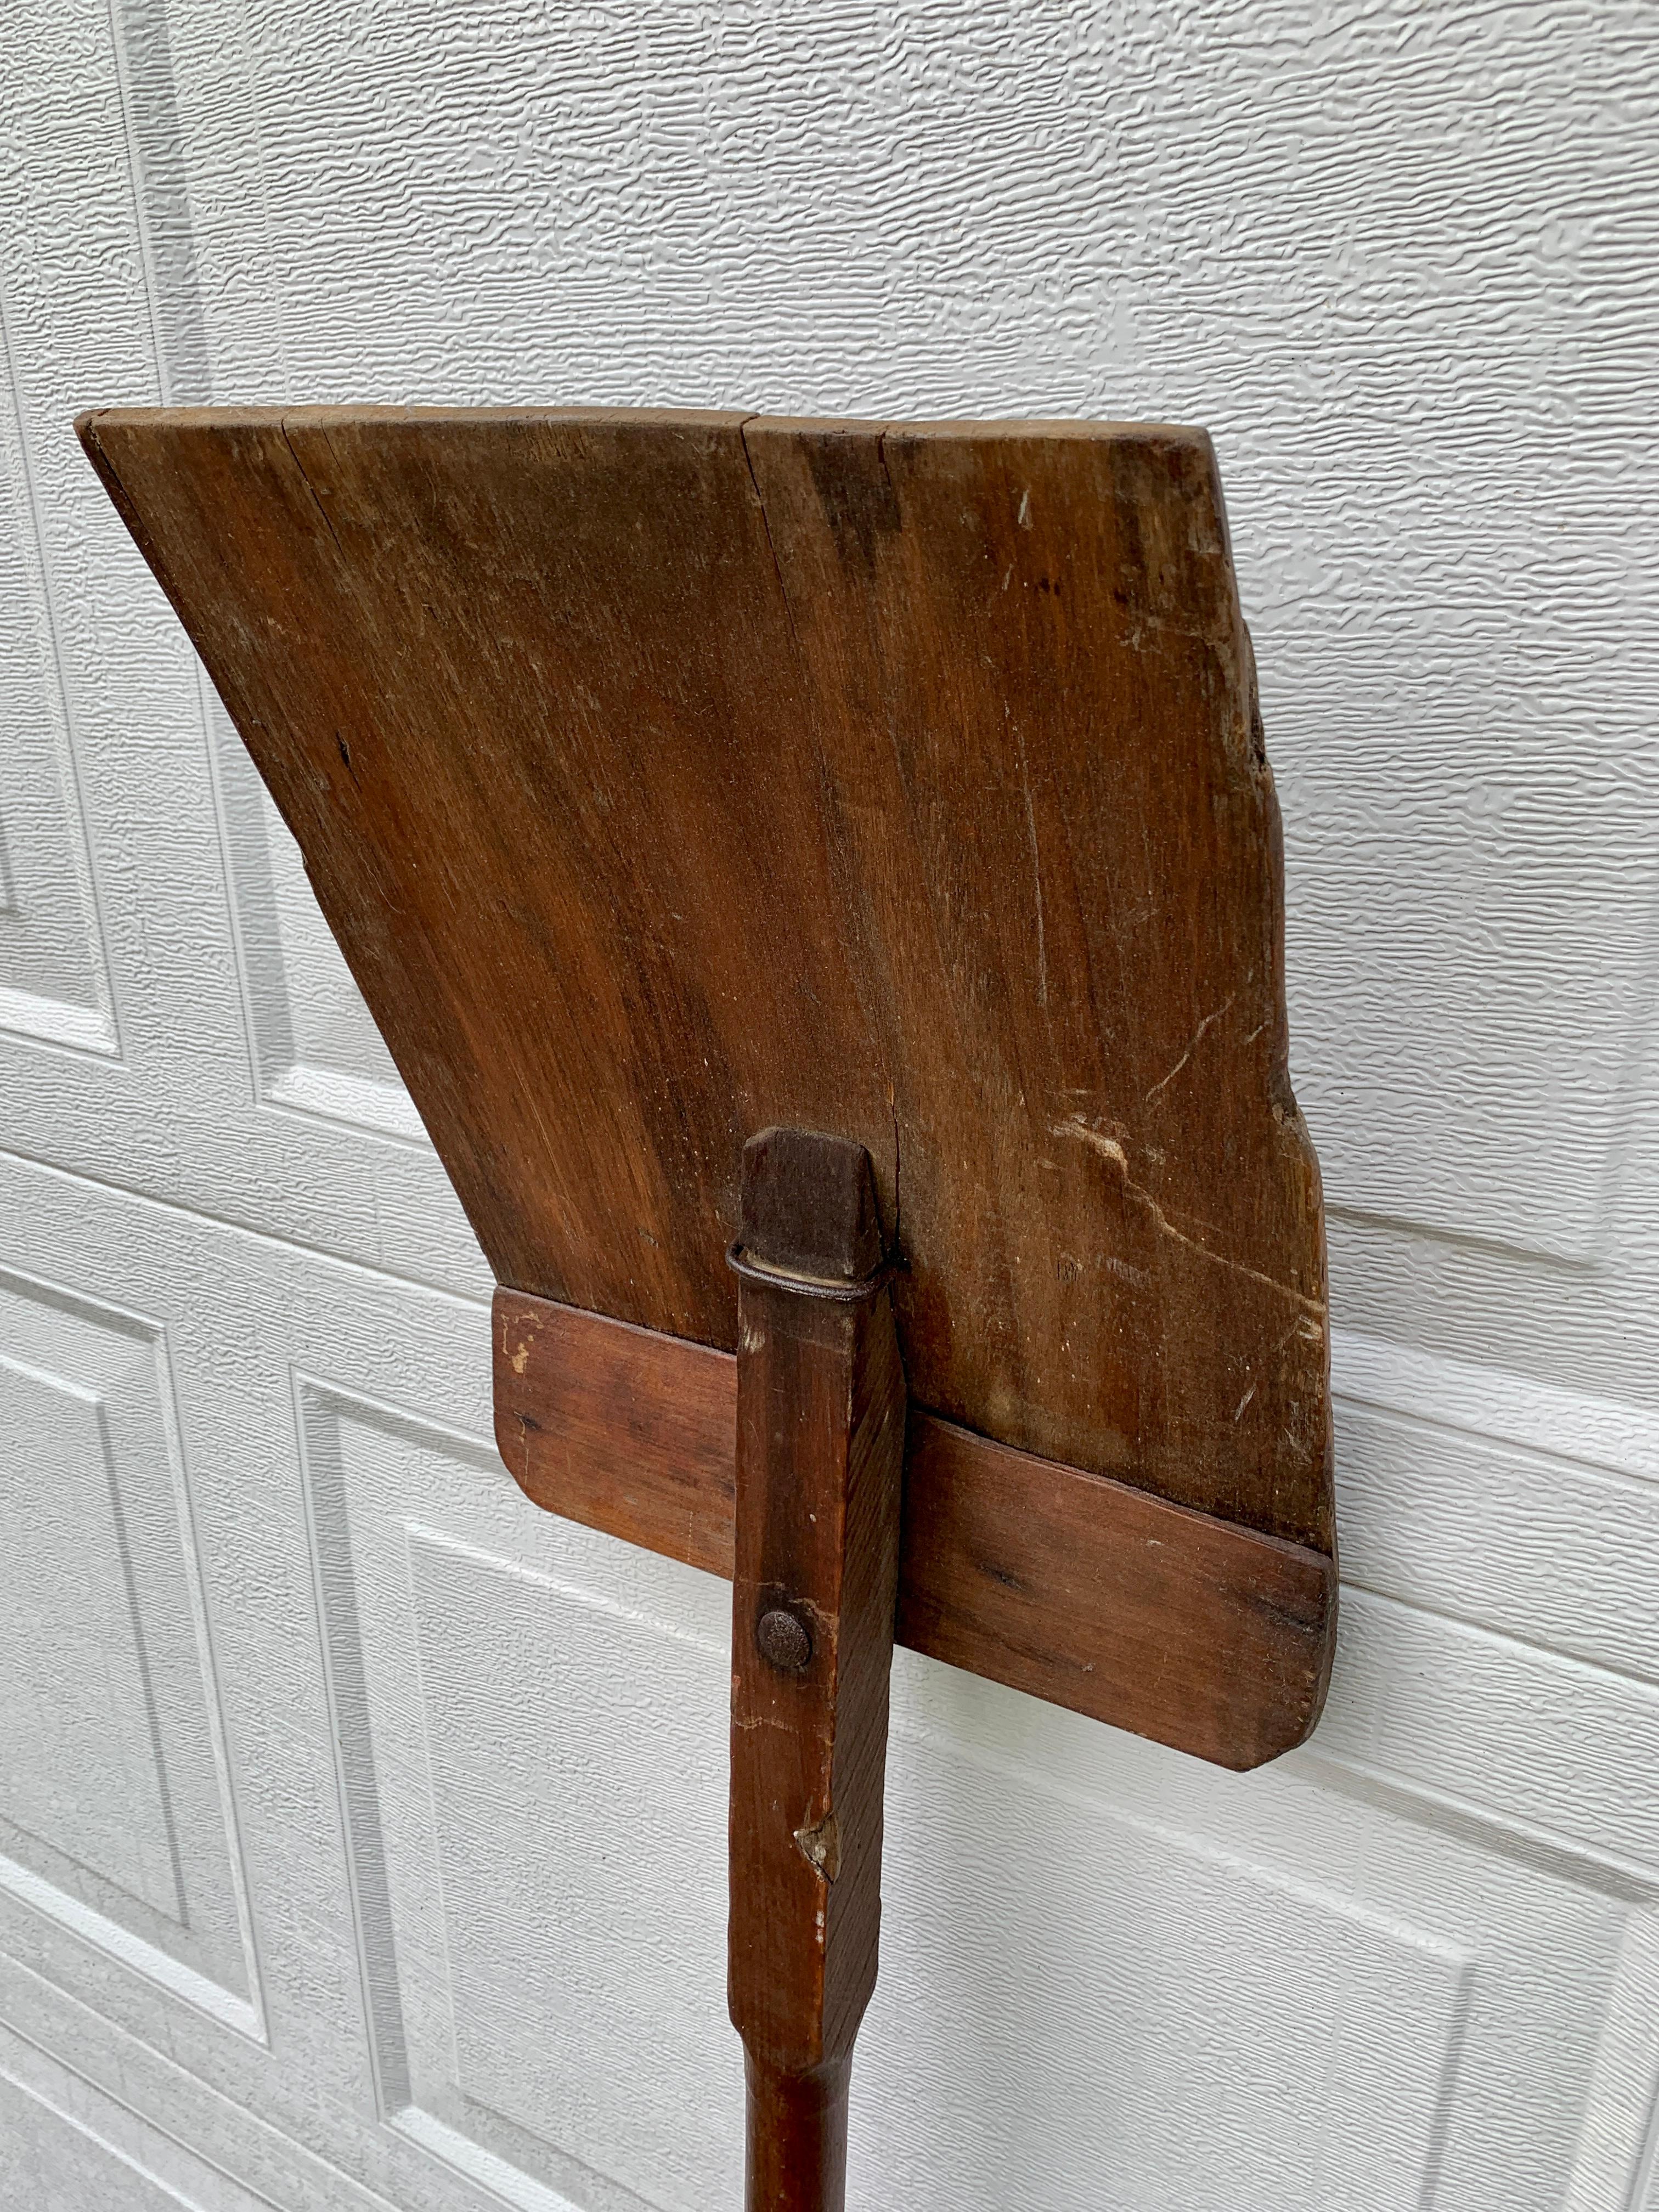 antique grain shovel